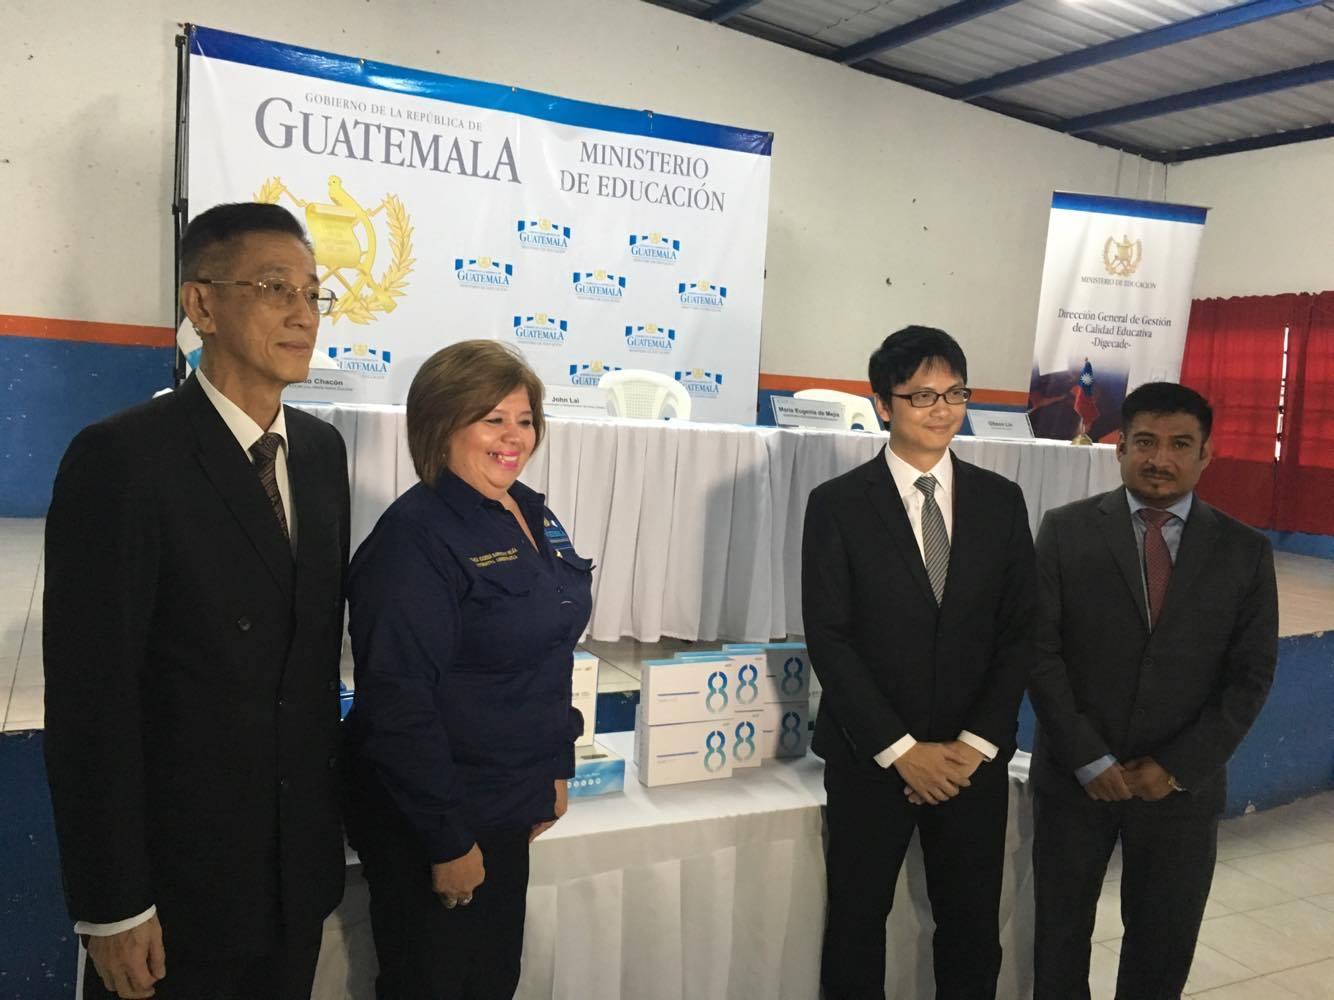 駐瓜地馬拉賴大使建中、宏碁公司代表林繼勝及瓜國教育部次長巴瑞歐出席捐贈典禮